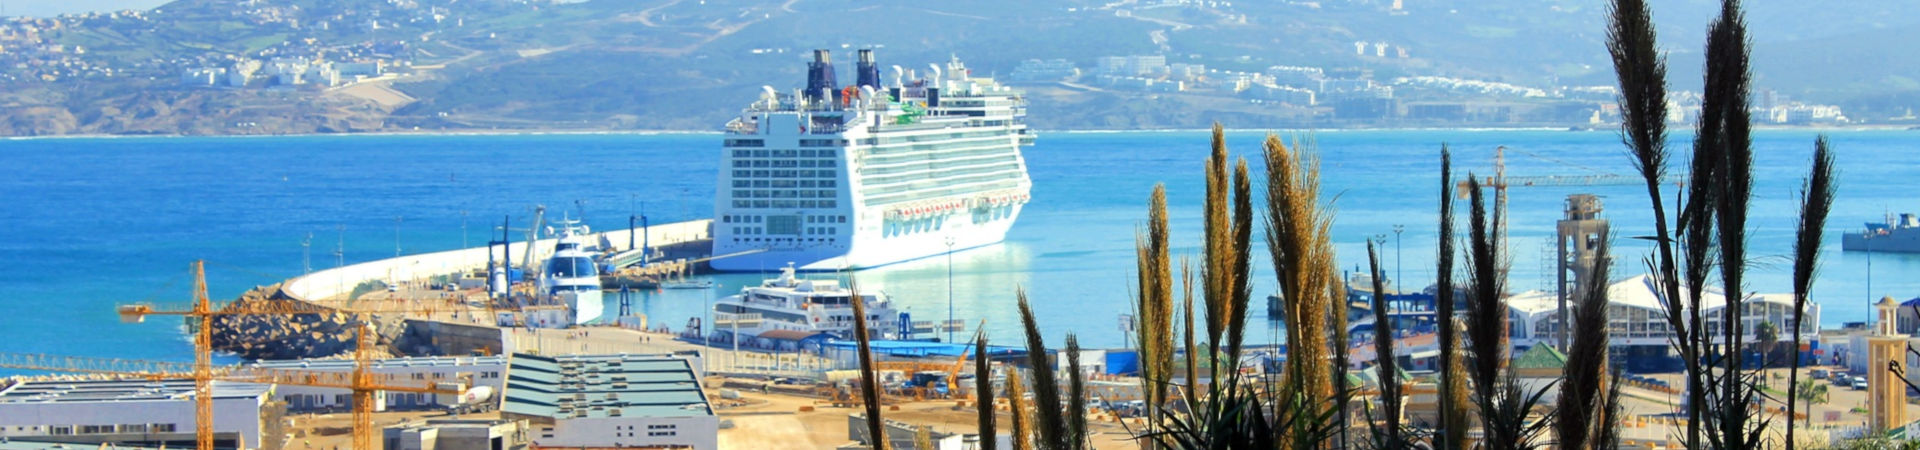 Imagen recurso del puerto de destino Tánger Med para la ruta en ferry Algeciras - Tánger Med